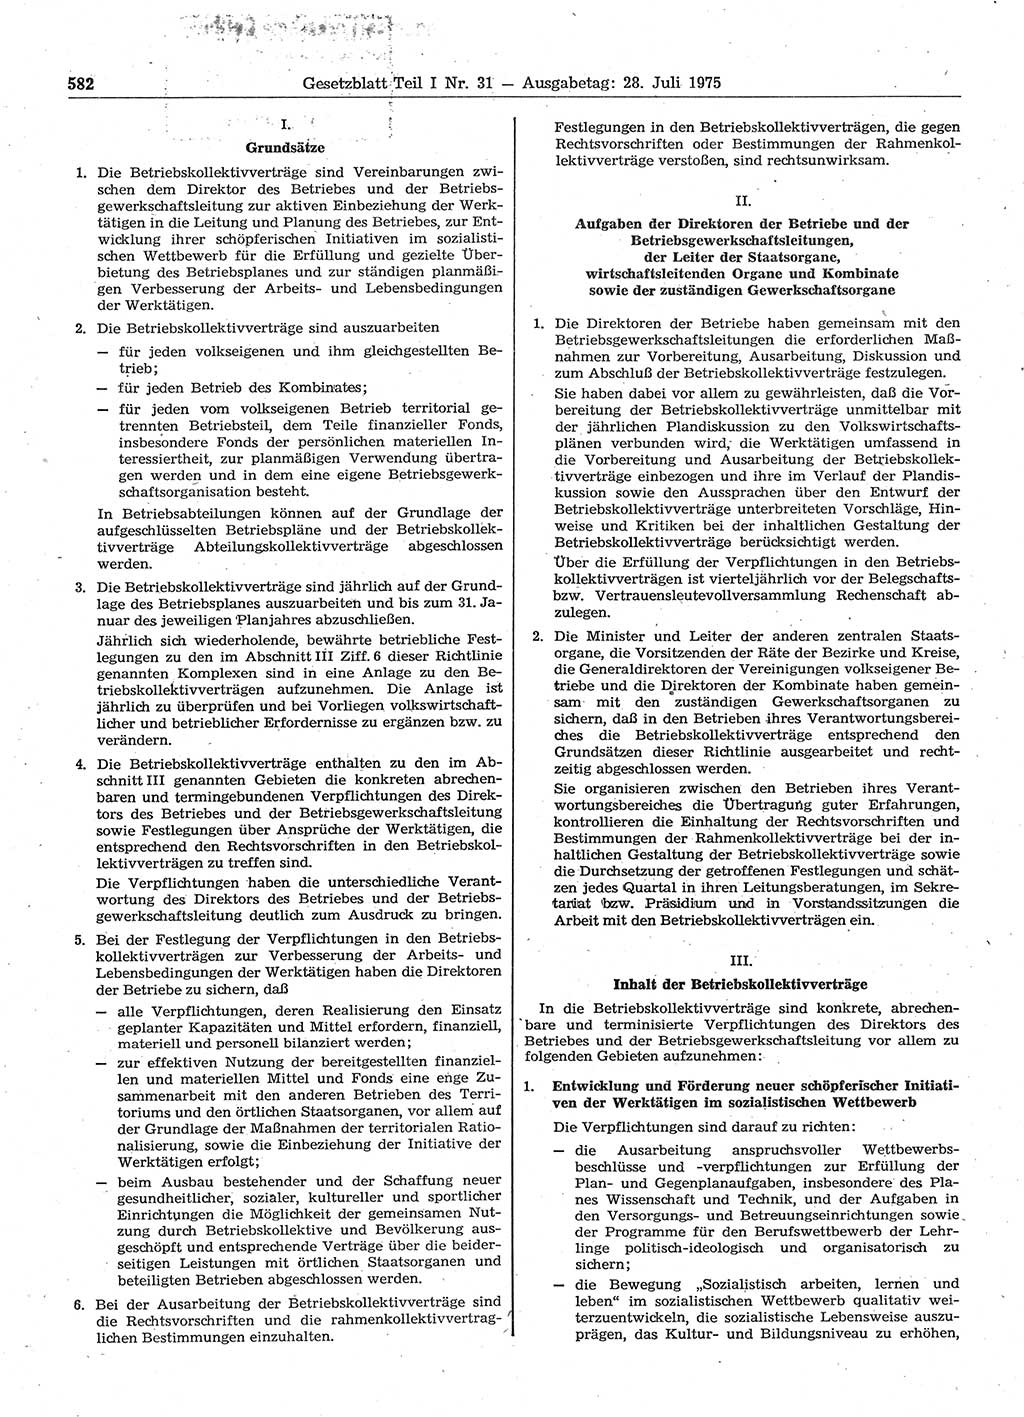 Gesetzblatt (GBl.) der Deutschen Demokratischen Republik (DDR) Teil Ⅰ 1975, Seite 582 (GBl. DDR Ⅰ 1975, S. 582)